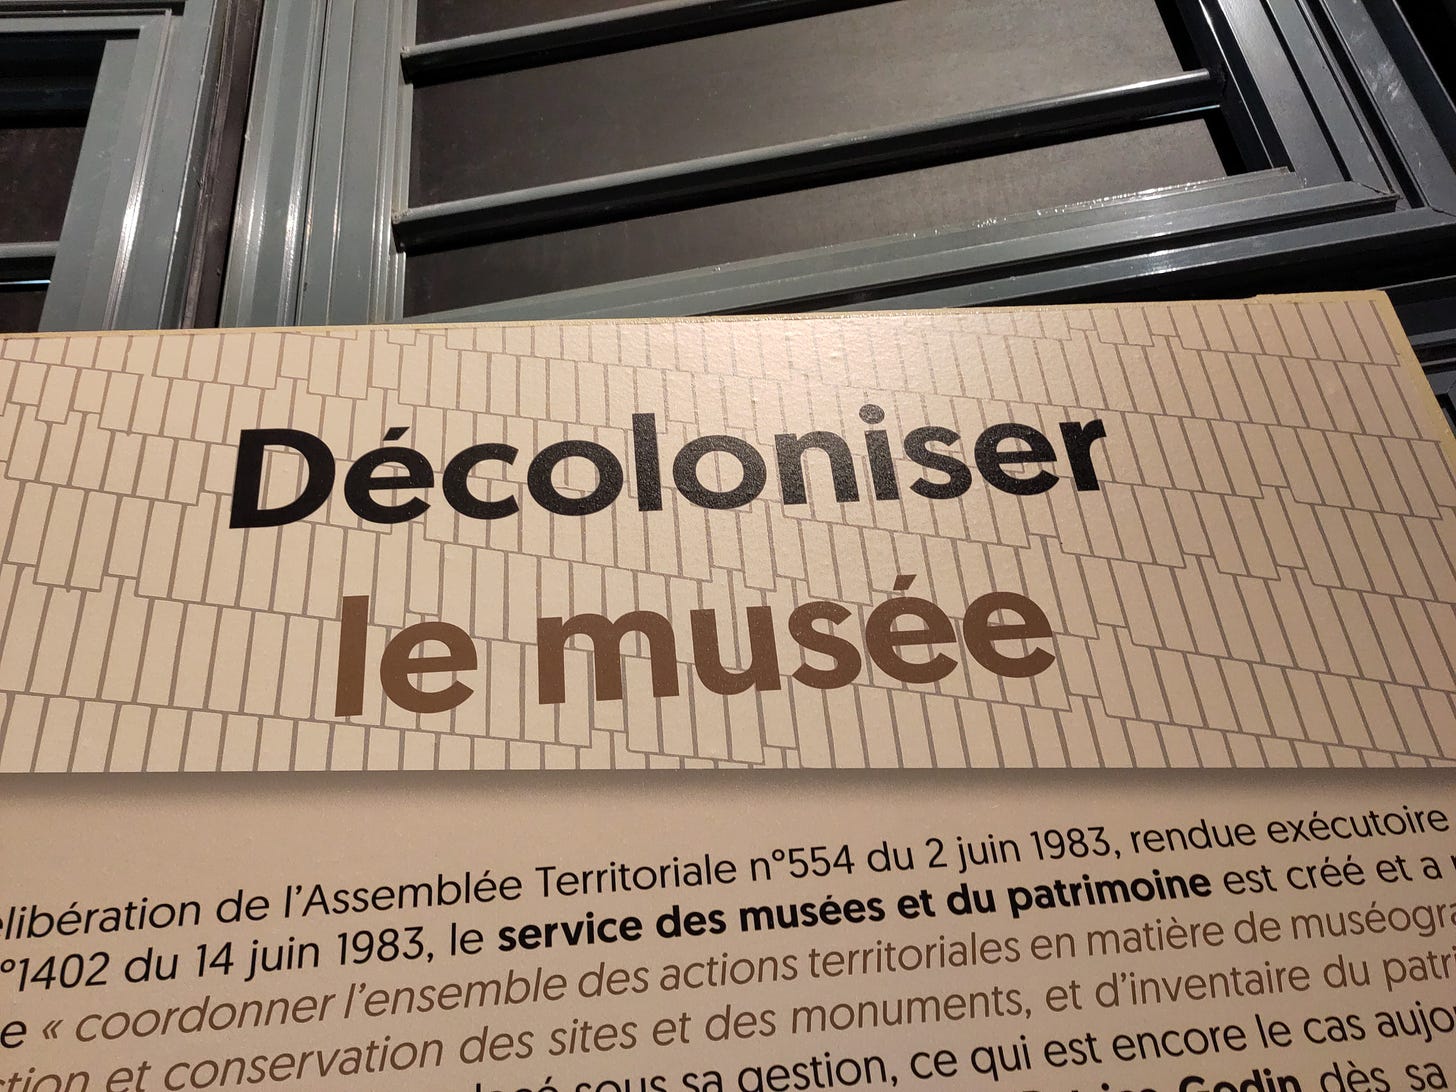 Photo d'un texte de salle dans l'exposition "Renaissance du musée de Nouvelle-Calédonie” au Centre Culturel Tjibaou : “Décoloniser le musée”